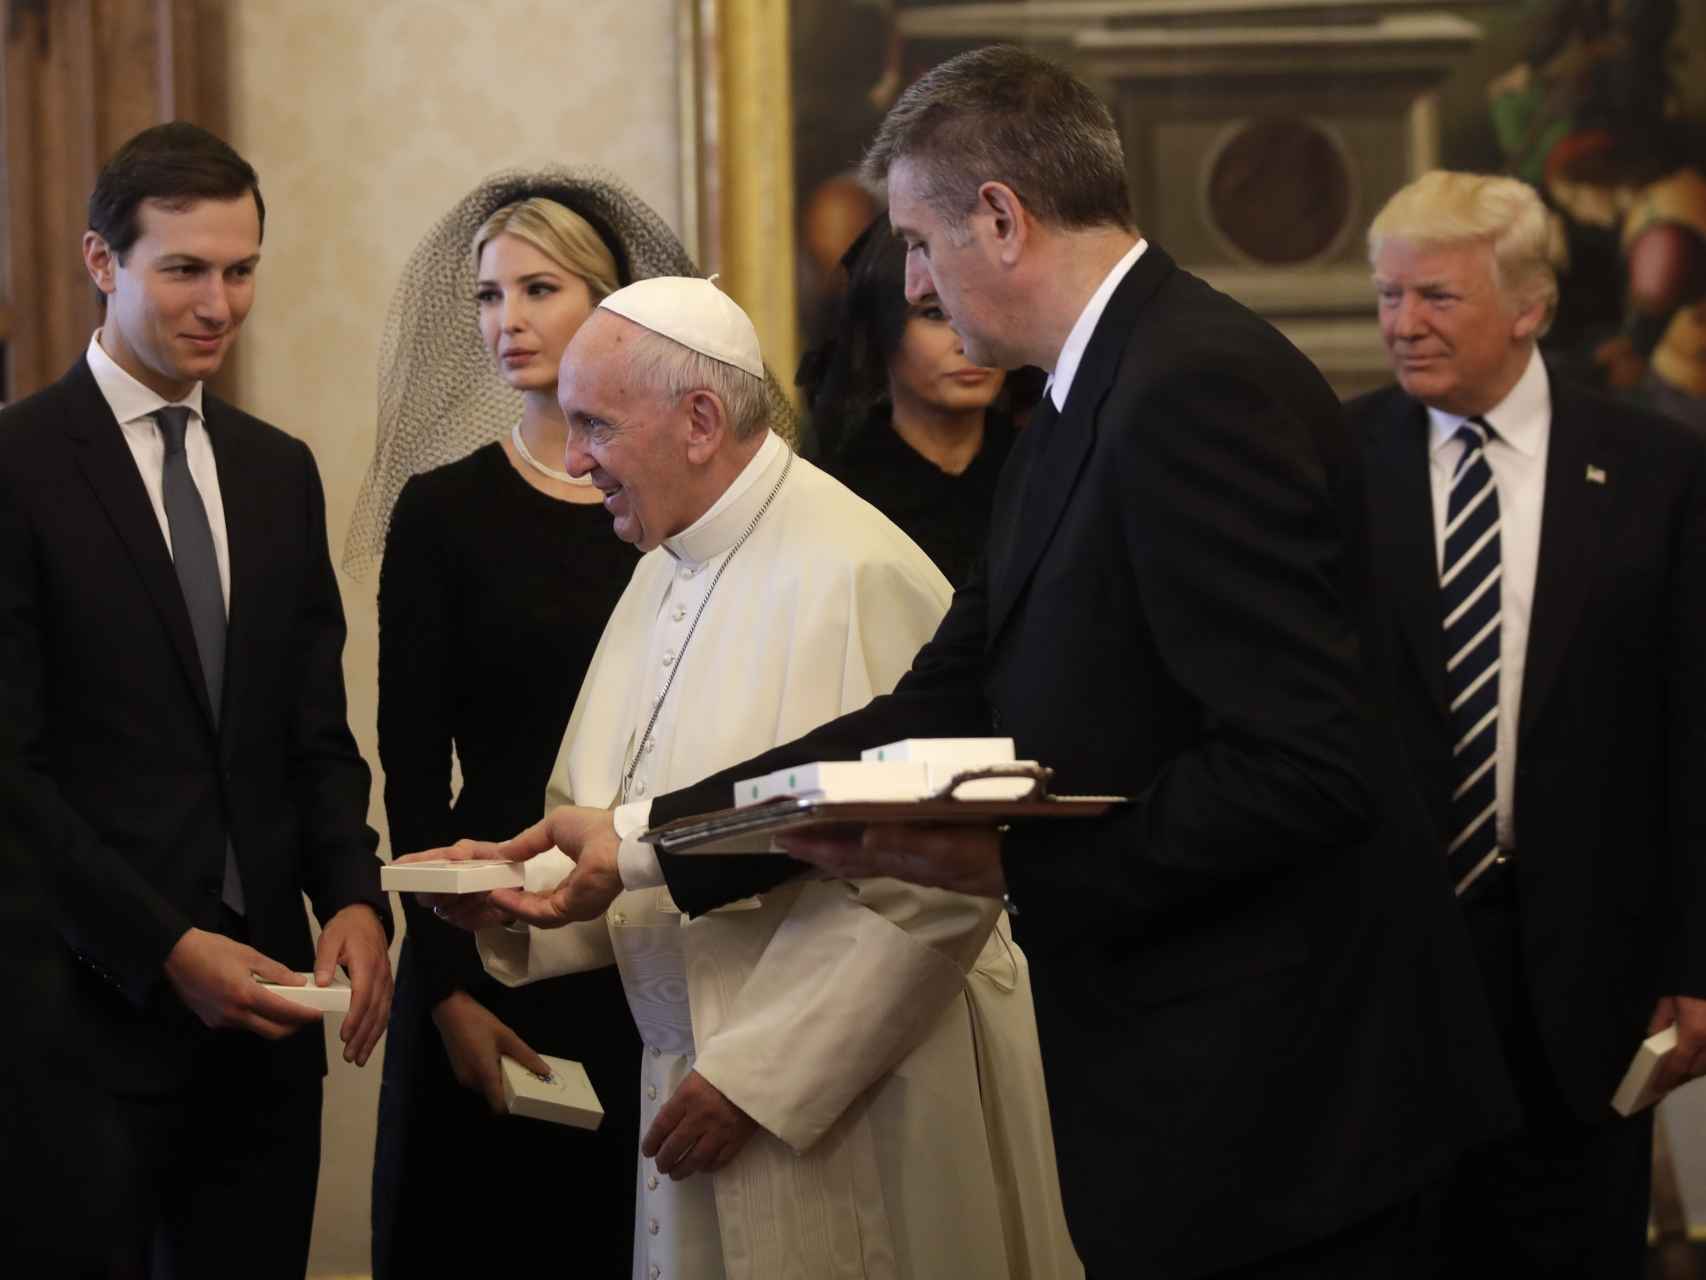 Jared e Ivanka junto al papa en la reciente visita al Vaticano del presidente de EEUU Donald Trump.